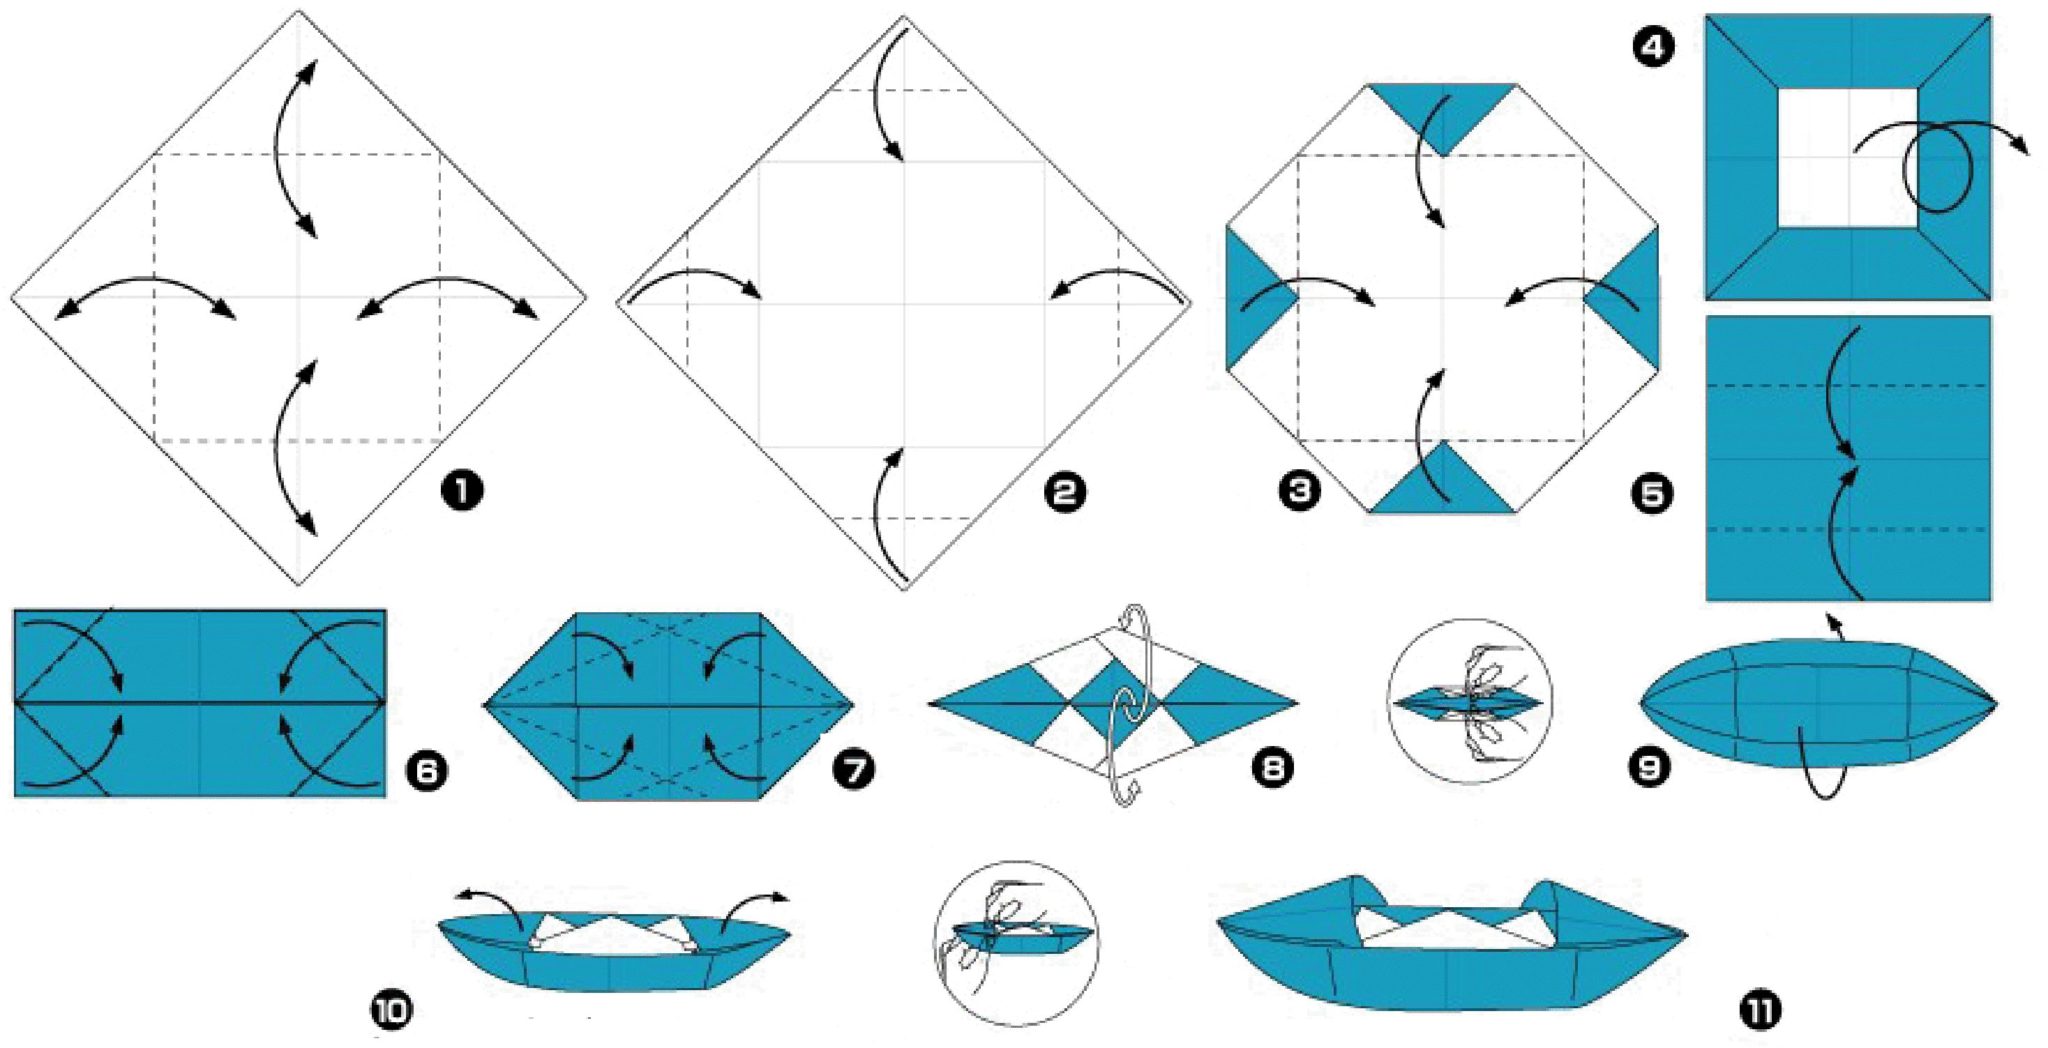 Оригами из бумаги для детей кораблик пошагово. Кораблик оригами из бумаги для детей схема. Как сделать оригами кораблик из бумаги а4. Бумажный кораблик схема складывания пошагово из бумаги. Кораблик из бумаги схема а4.